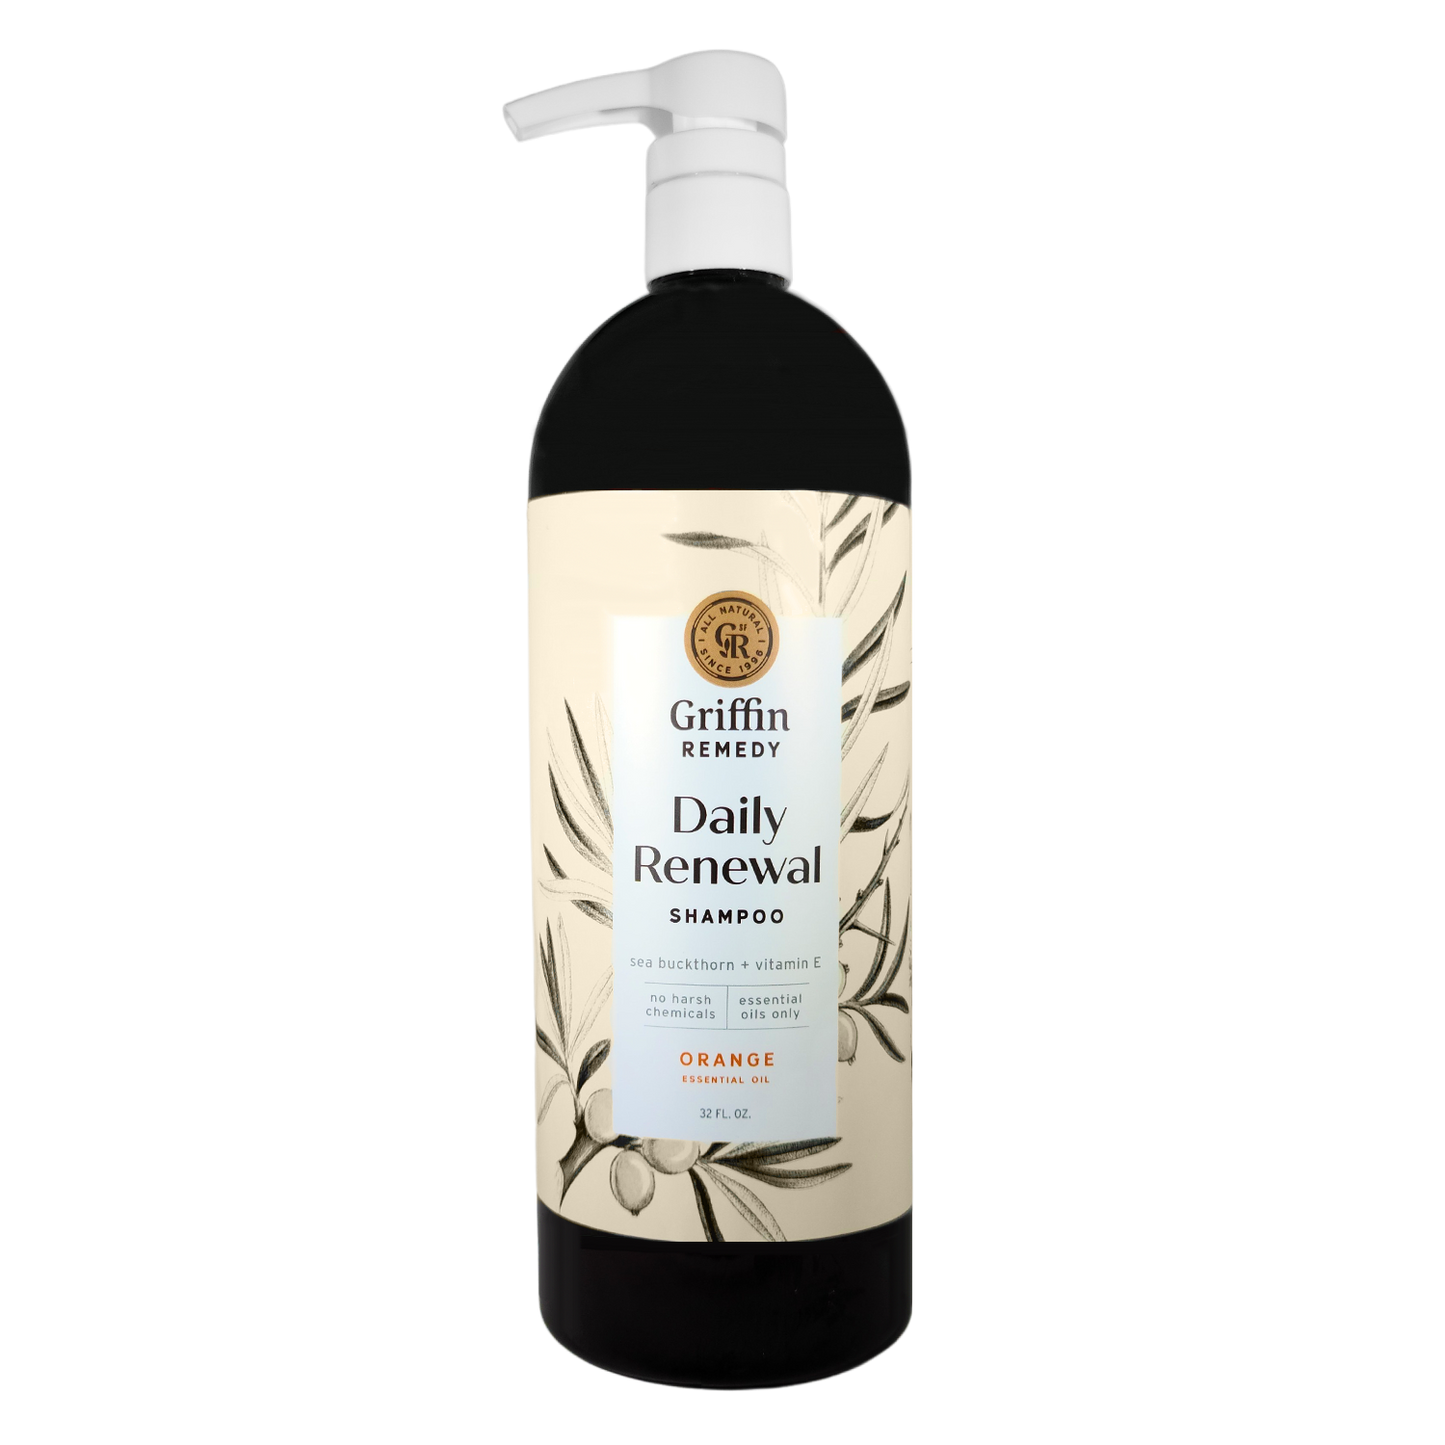 Daily Renewal Shampoo